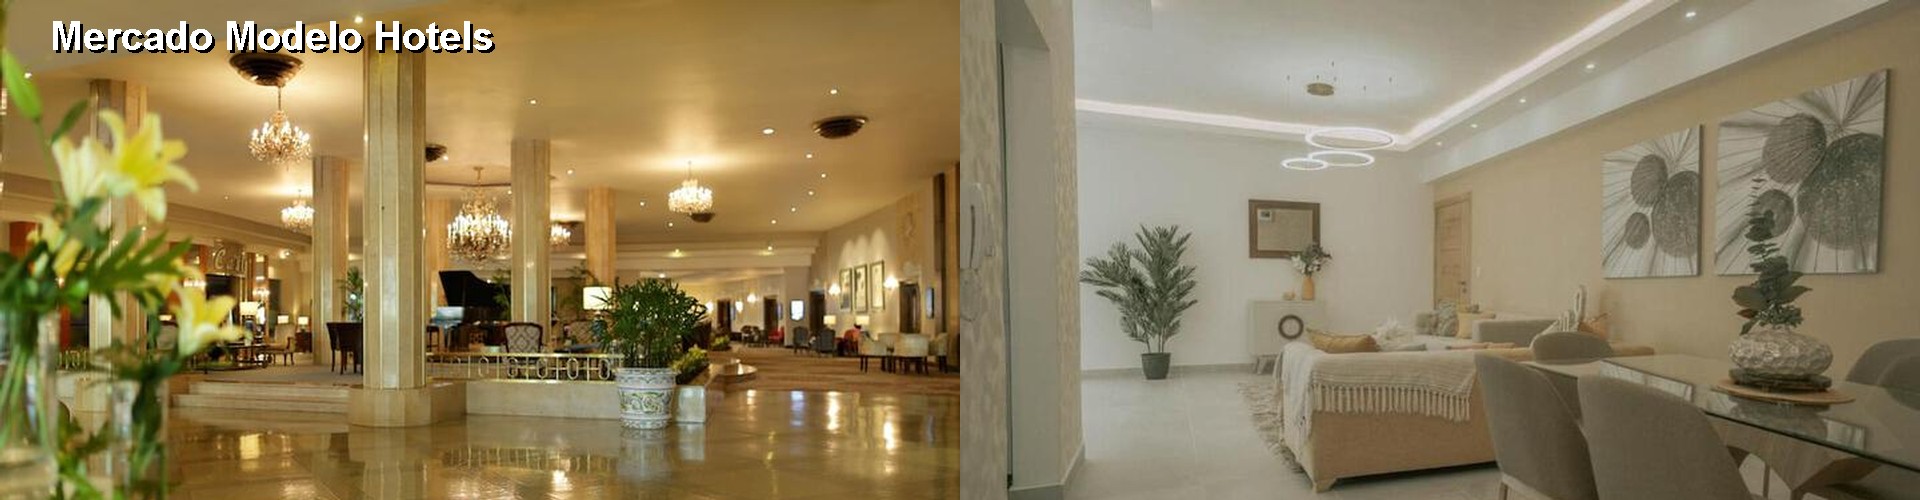 3 Best Hotels near Mercado Modelo